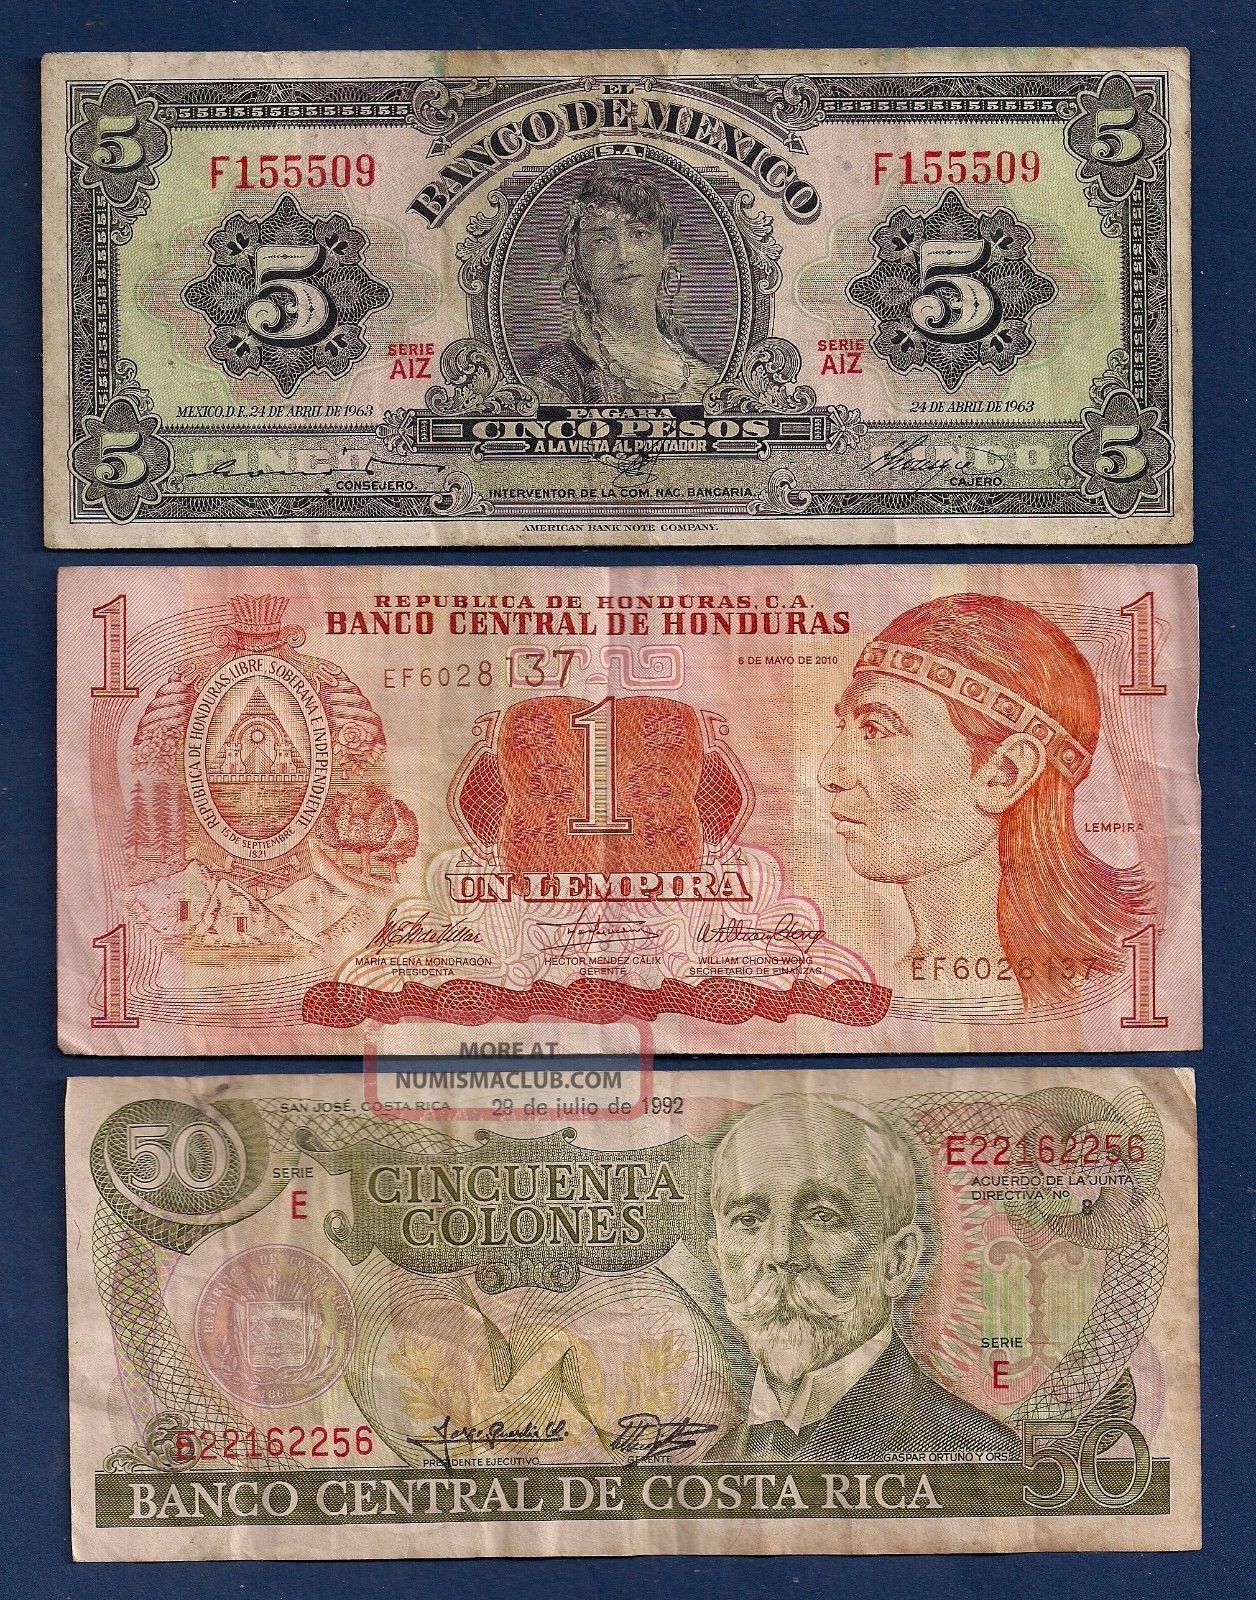 Mexico 5 Pesos 1963 P - 60h,  Honduras Lempira,  Costa Rica 50 Colones P - 257a Paper Money: World photo